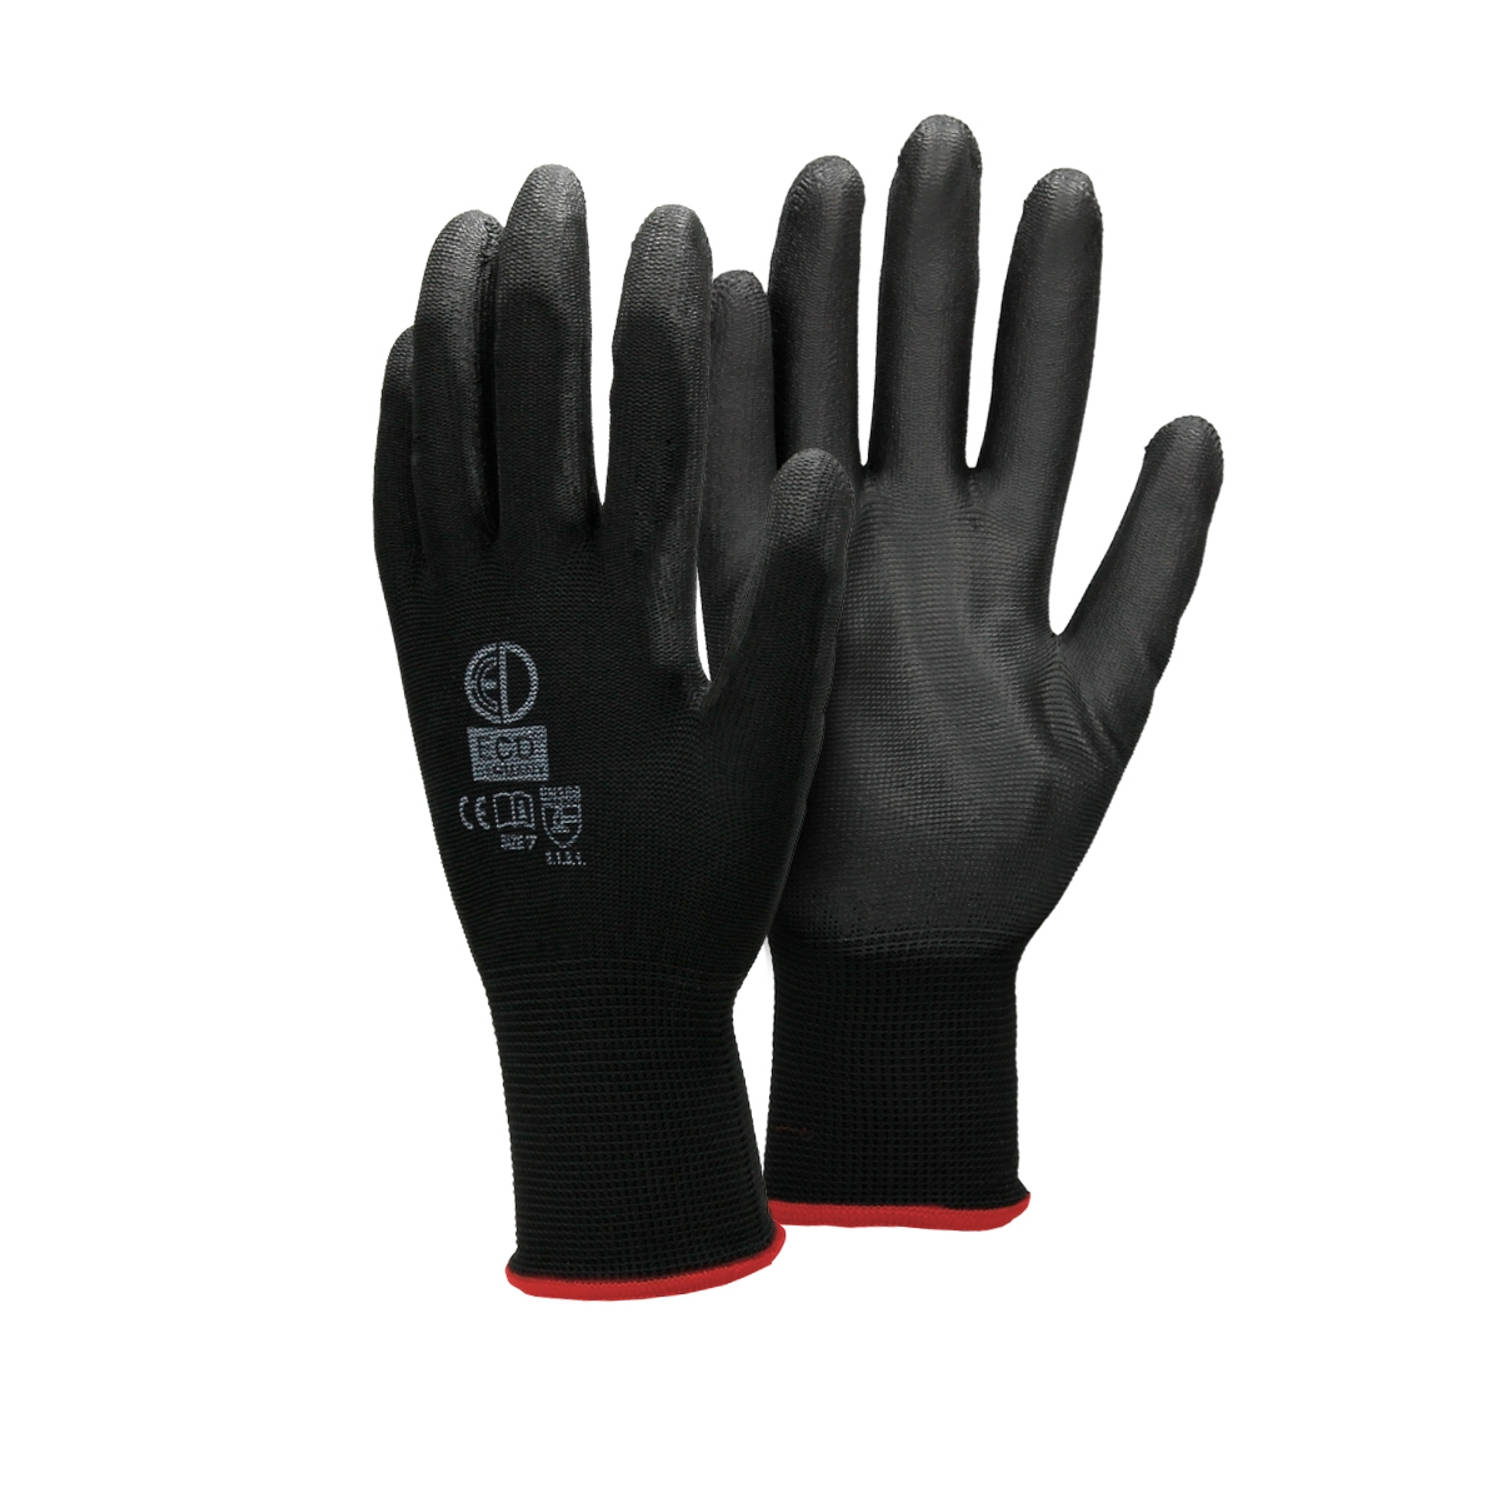 ECD Germany 36 paar werkhandschoenen met PU coating - maat 7-S - zwart - monteurshandschoenen montagehandschoenen beschermende handschoenen tuinhandschoenen - diverse kleuren & mat